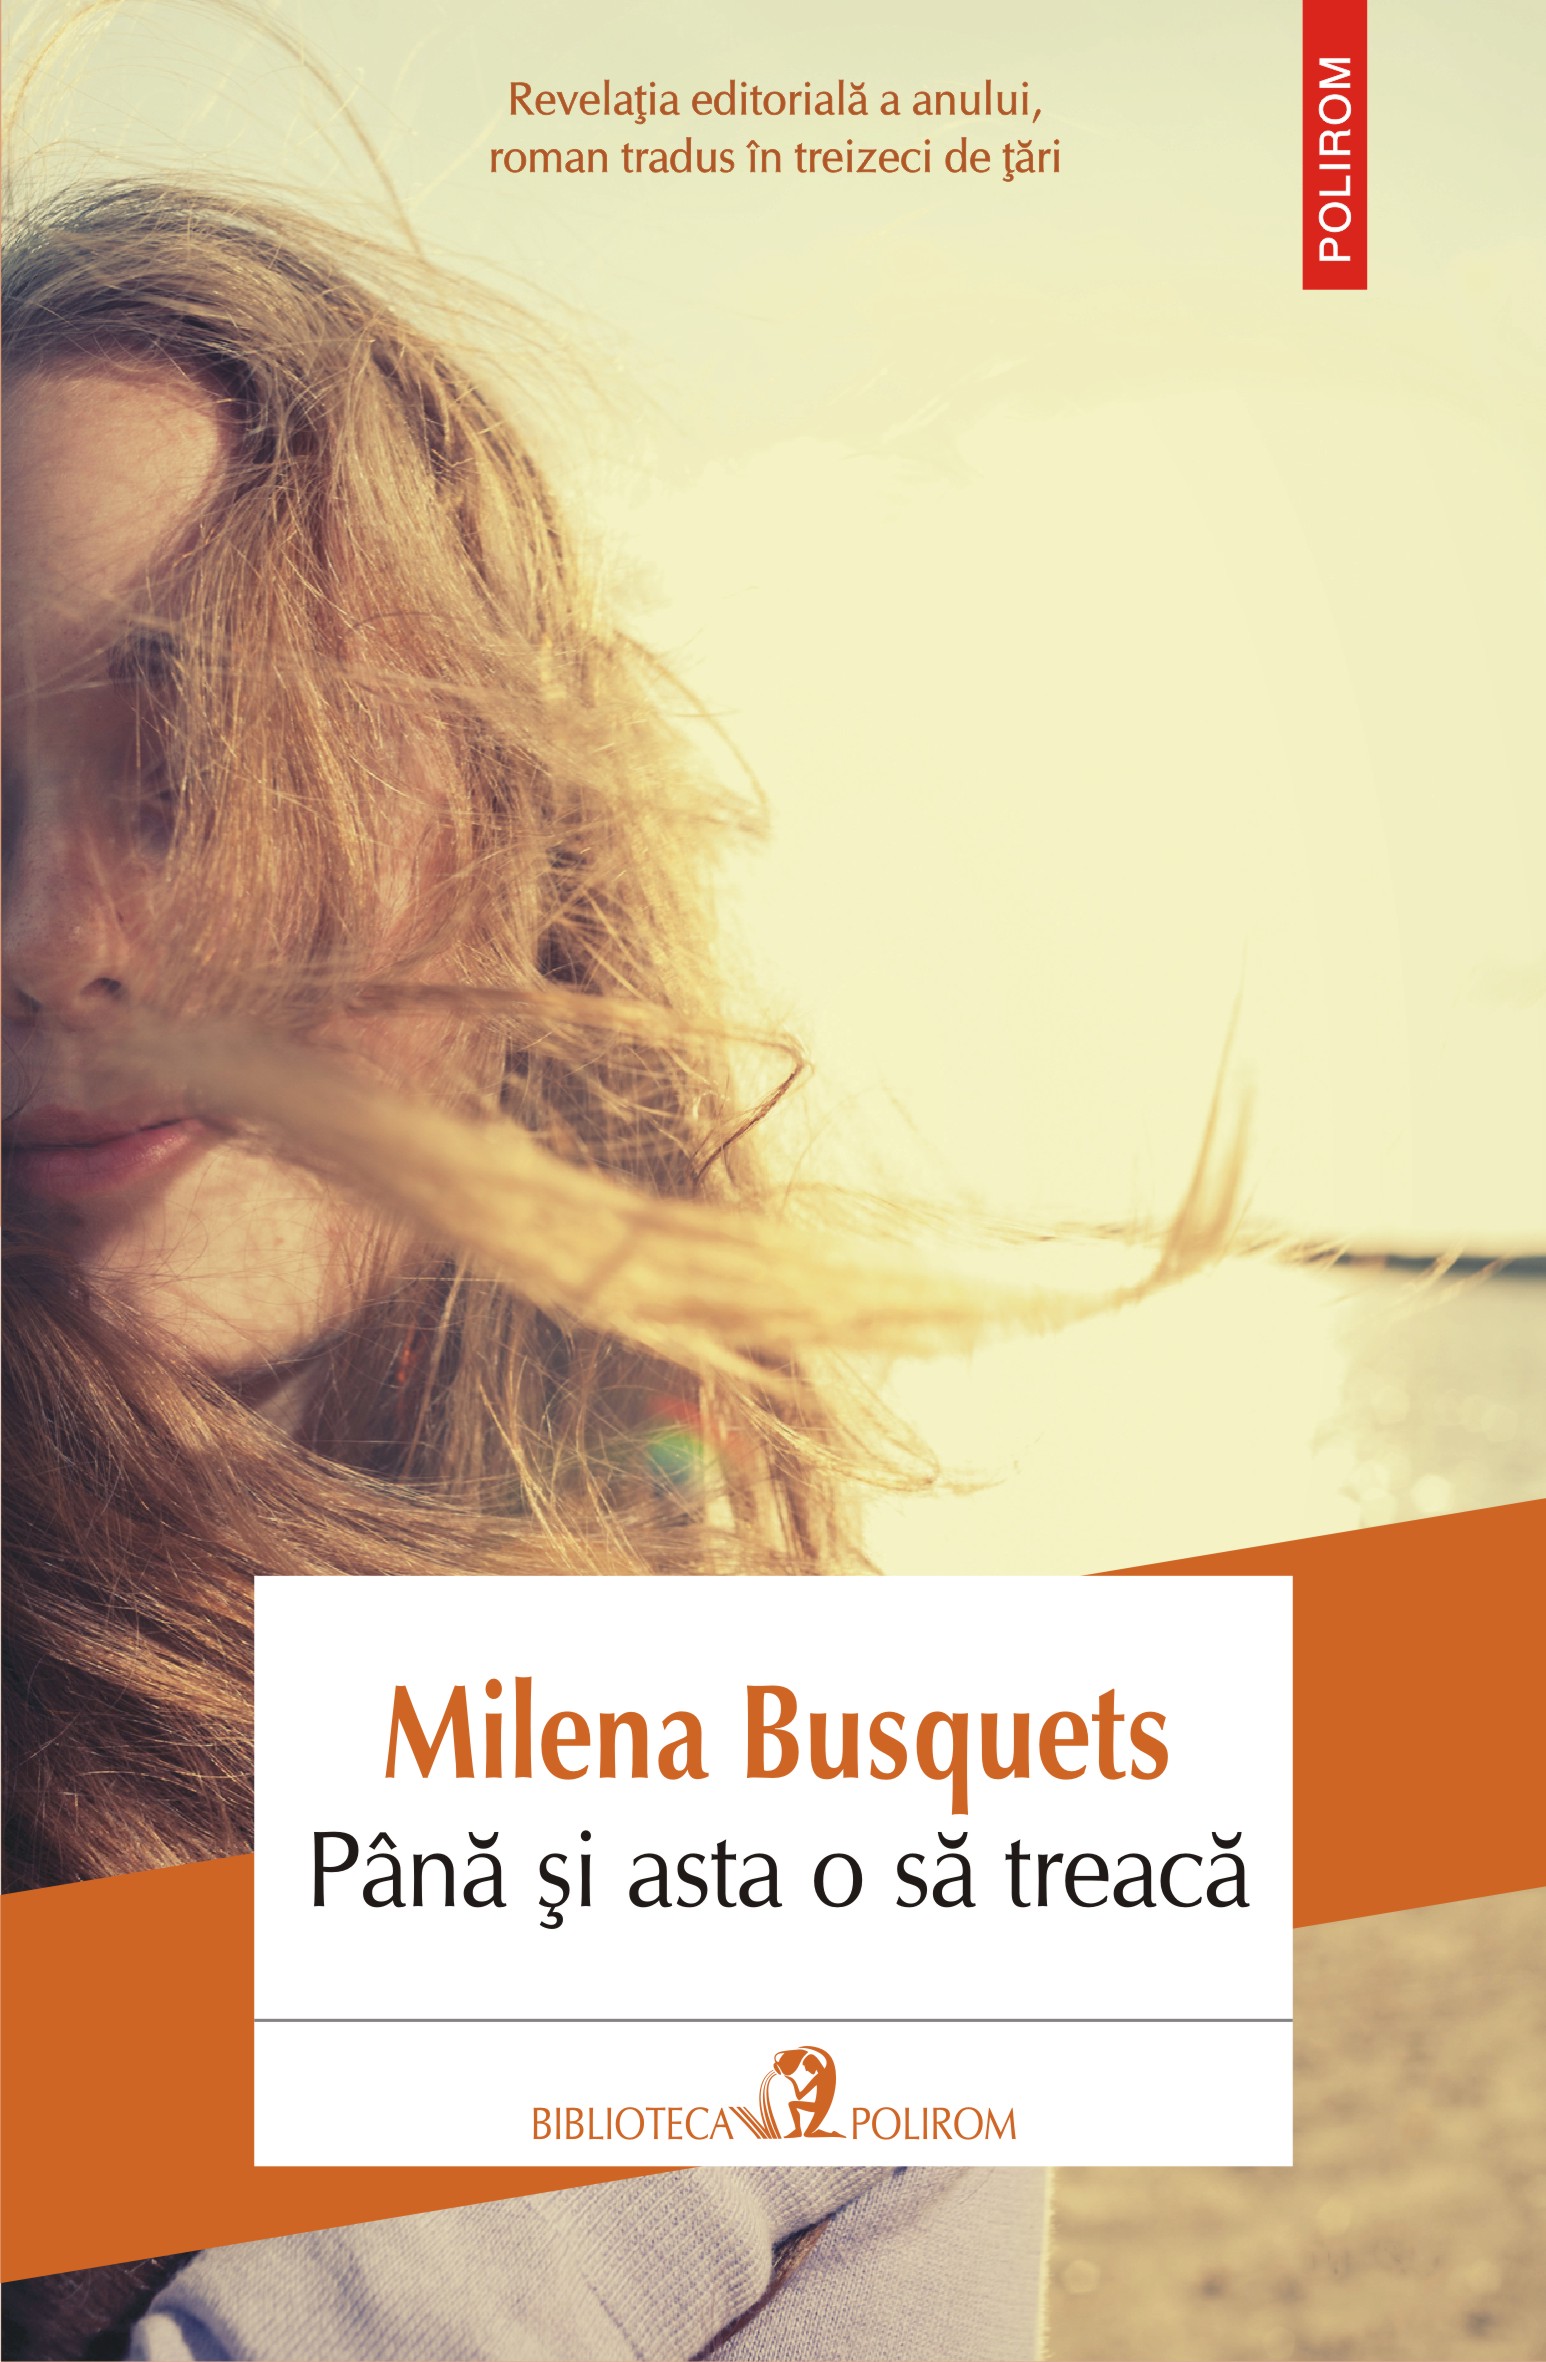 eBook Pana si asta o sa treaca - Milena Busquets